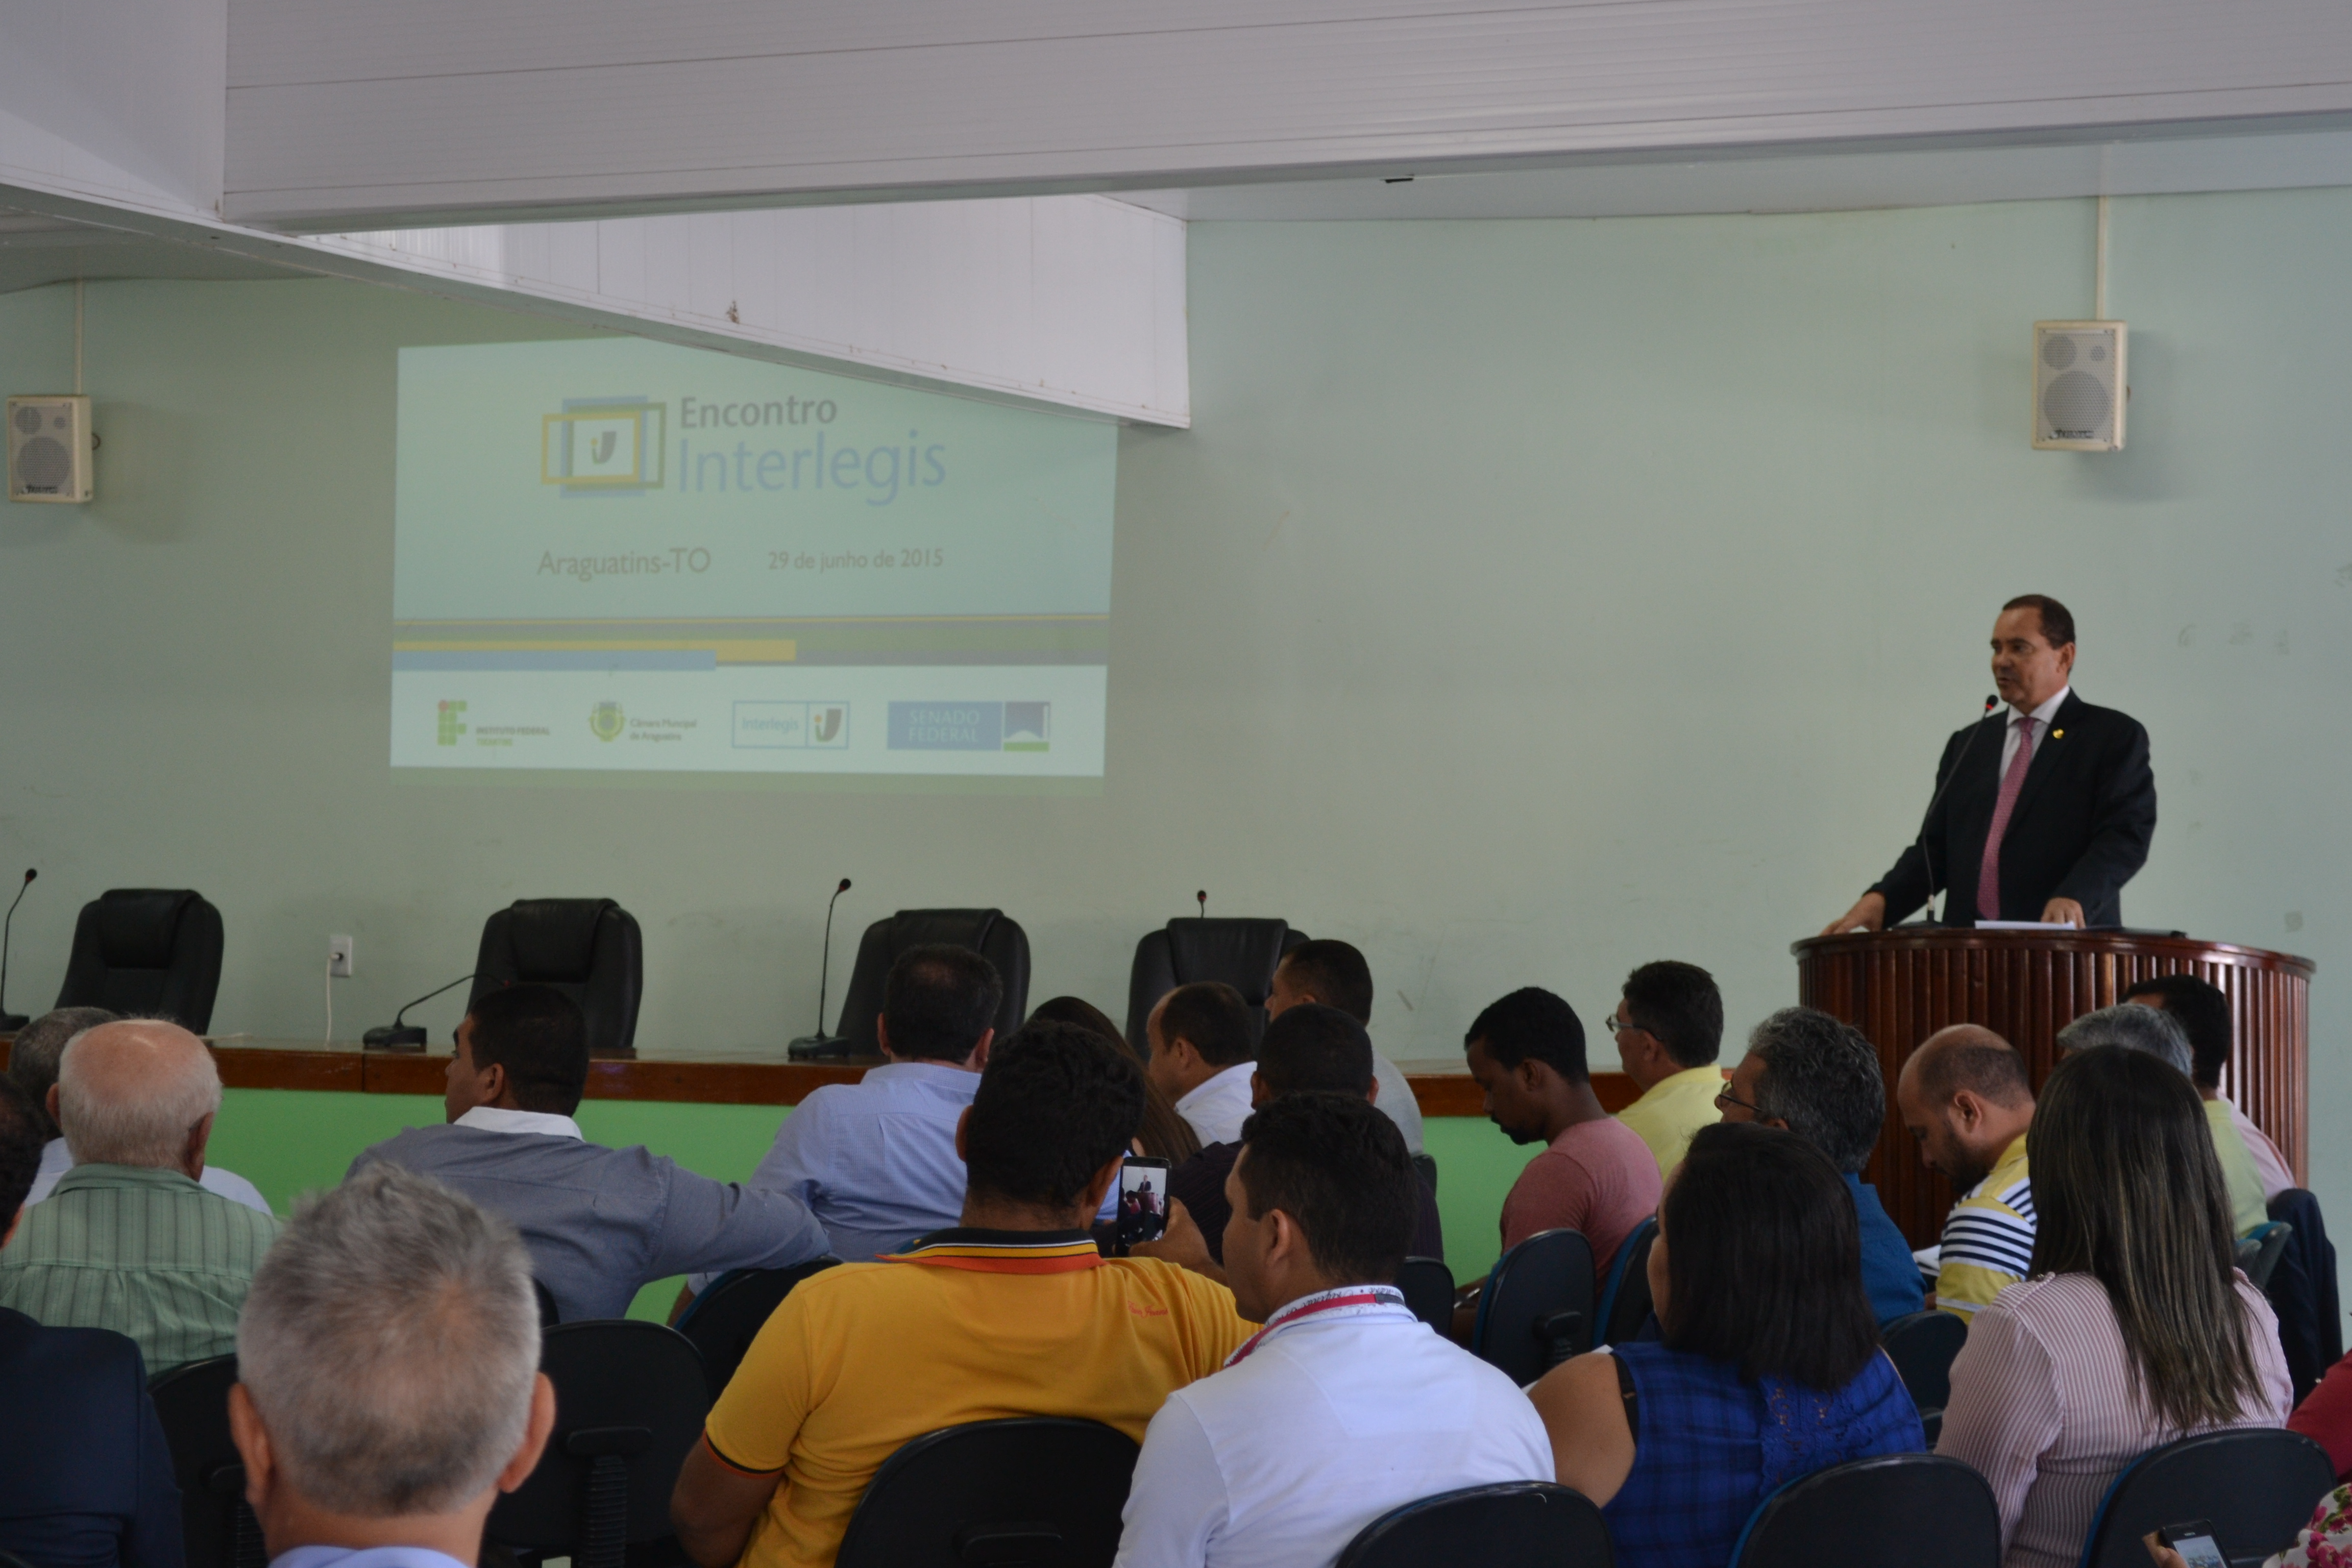 Senador Vicentinho Alves (PR-TO) abre Encontro Interlegis em Araguatins pregando transparência